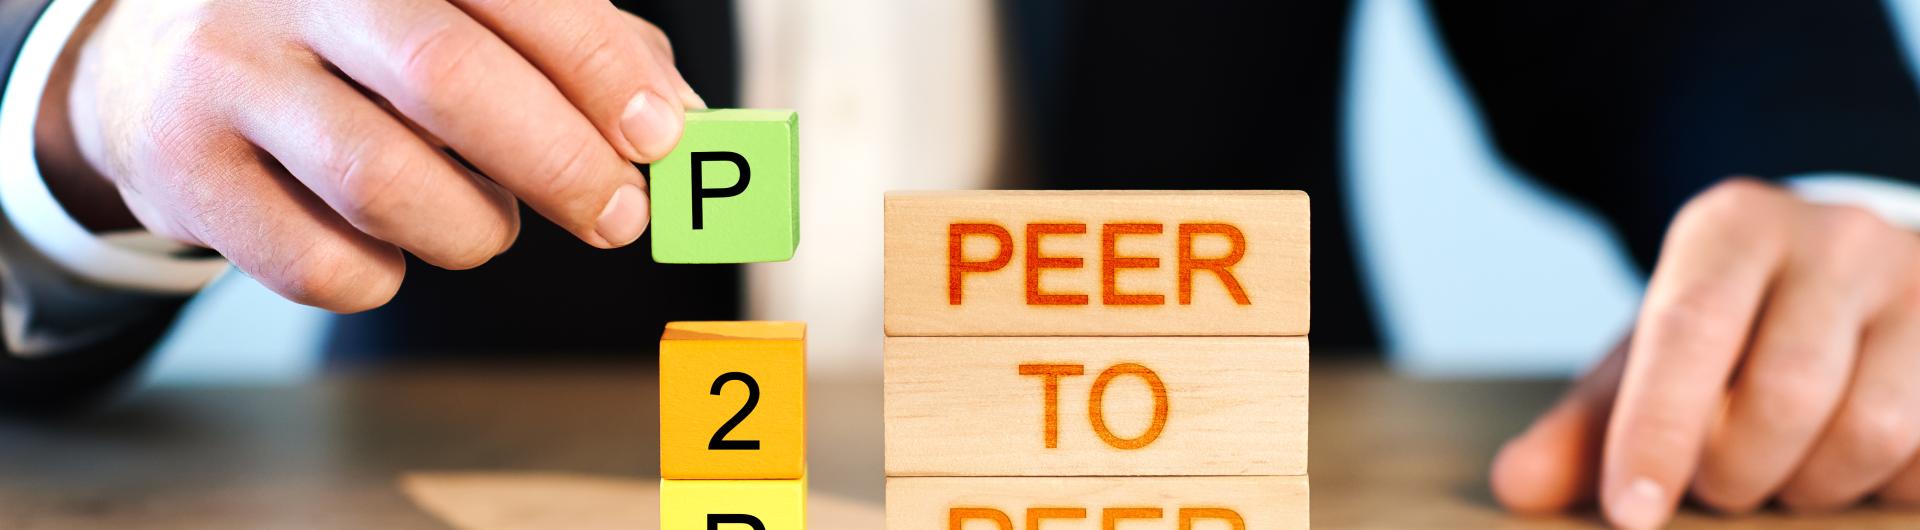 Man stacking P2P Peer to Peer blocks